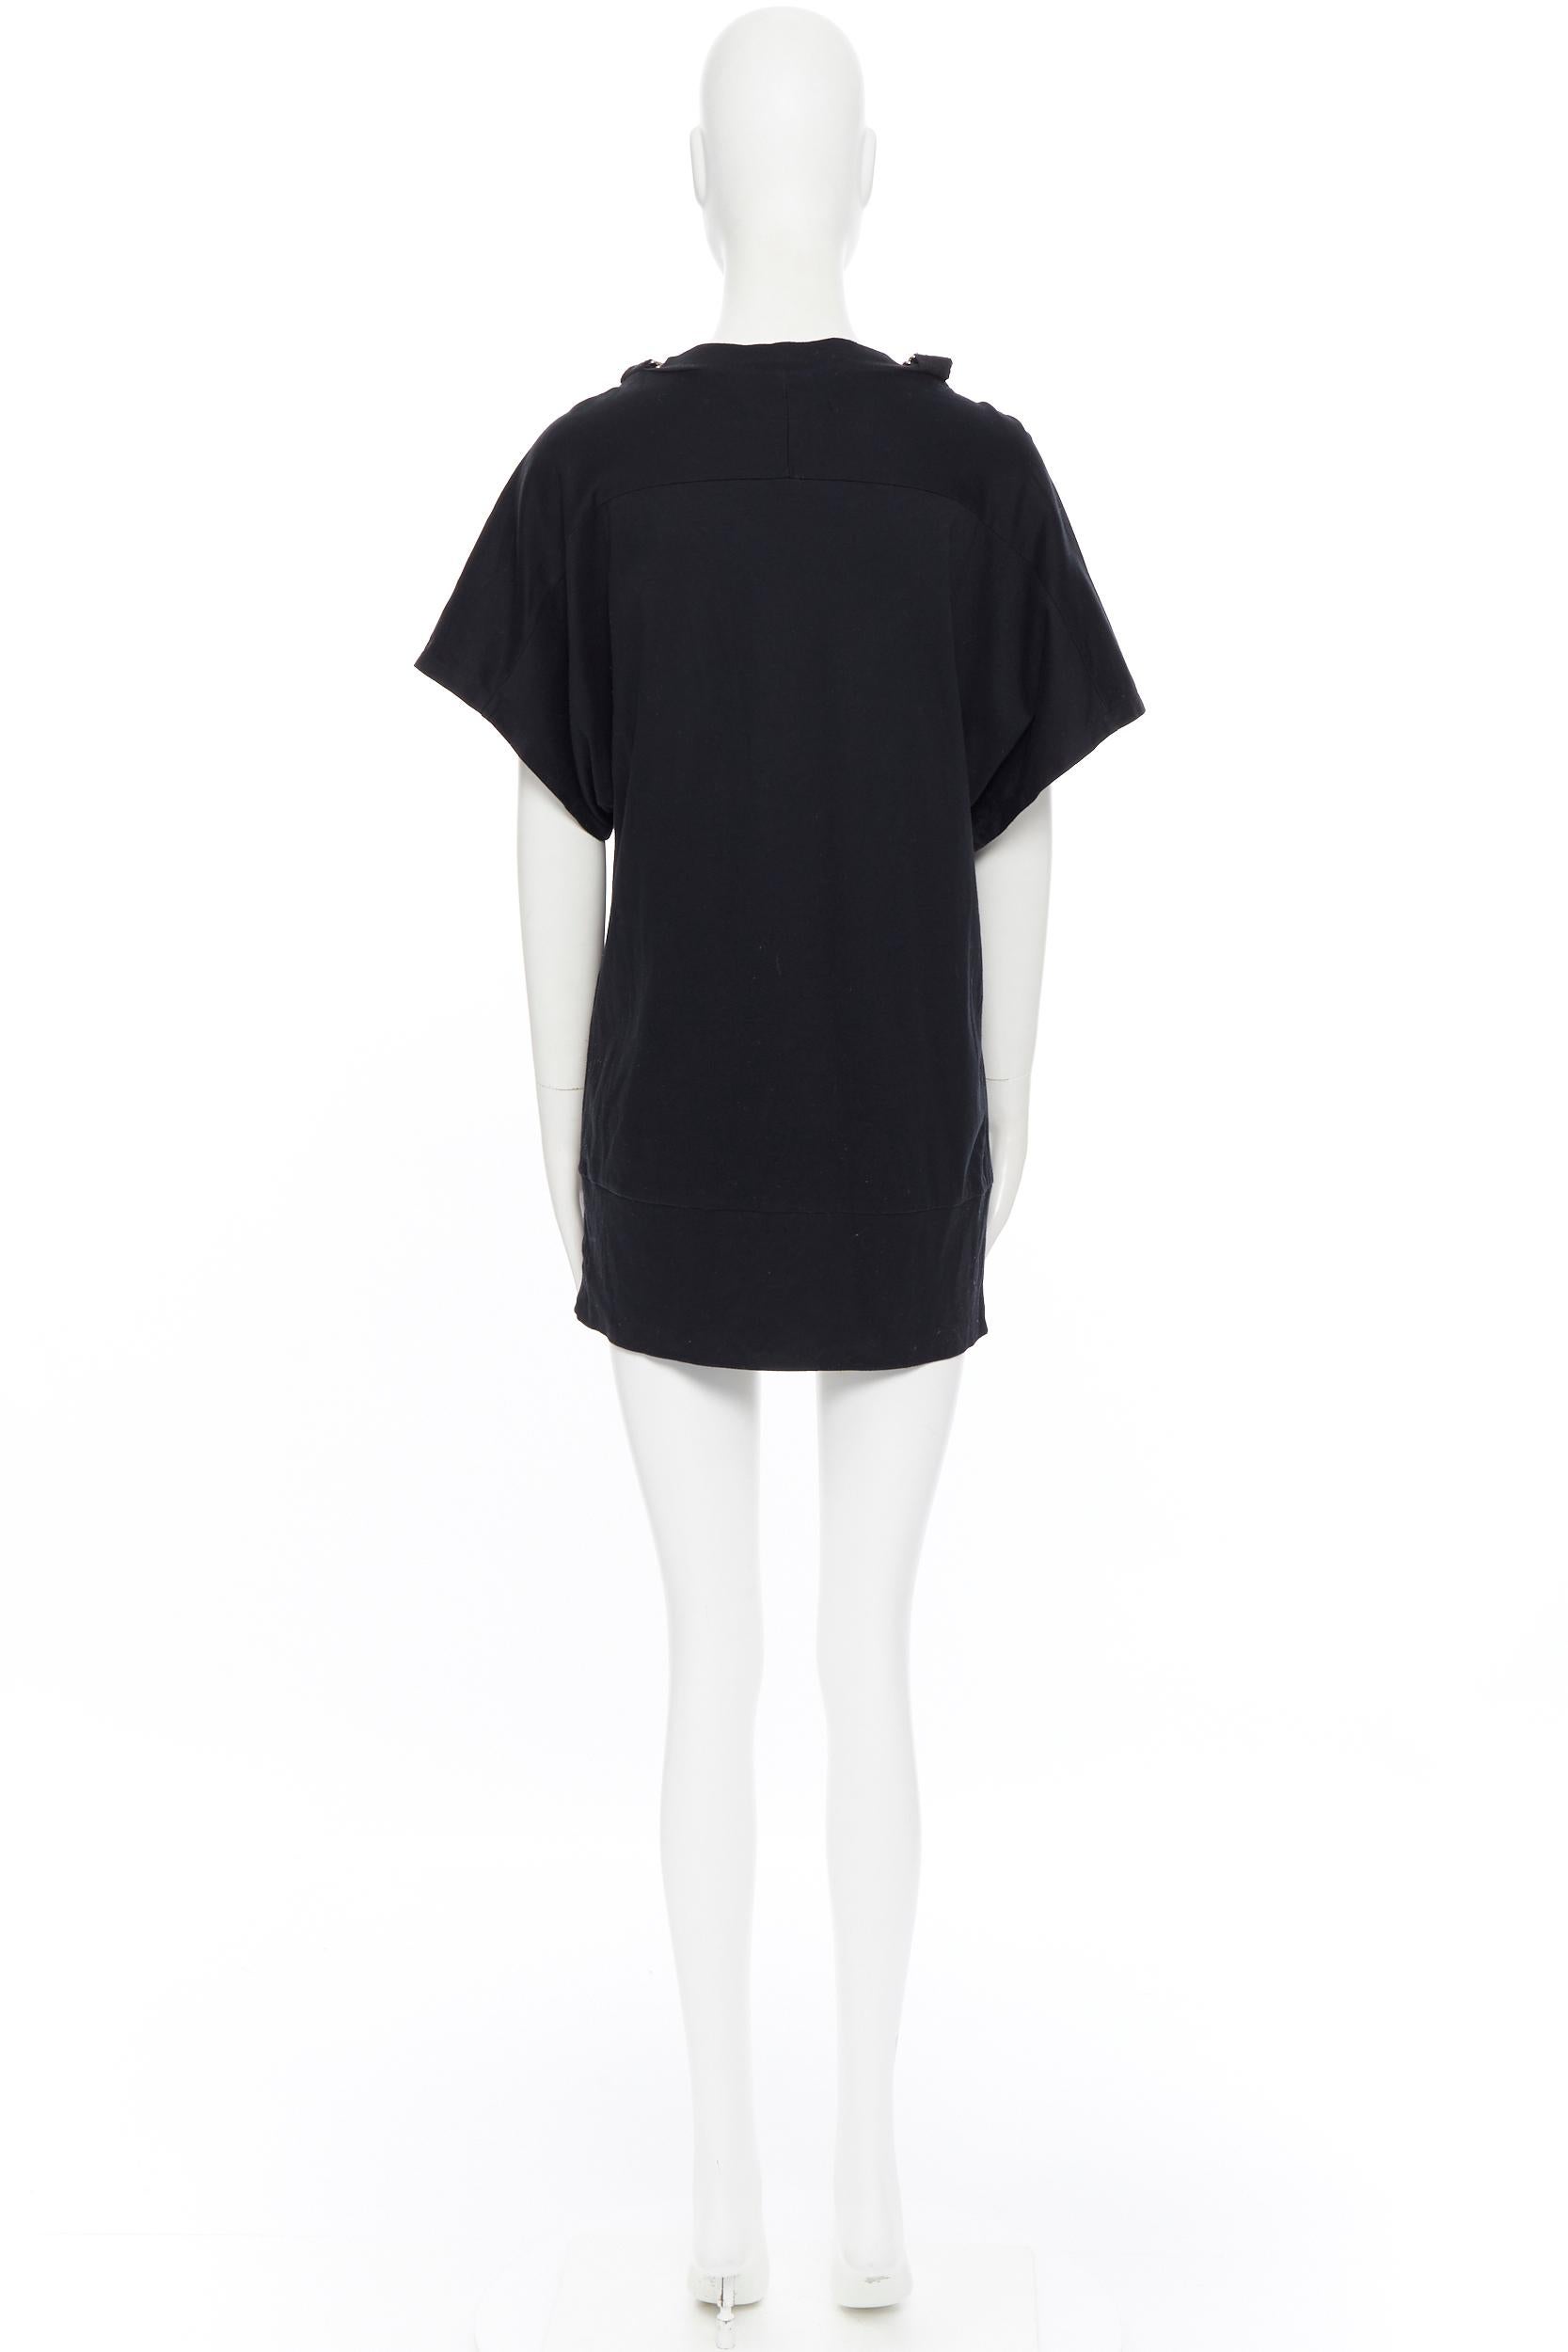 Women's LIMI FEU YOHJI YAMAMOTO black cotton D-ring strap shoulder tunic t-shirt S